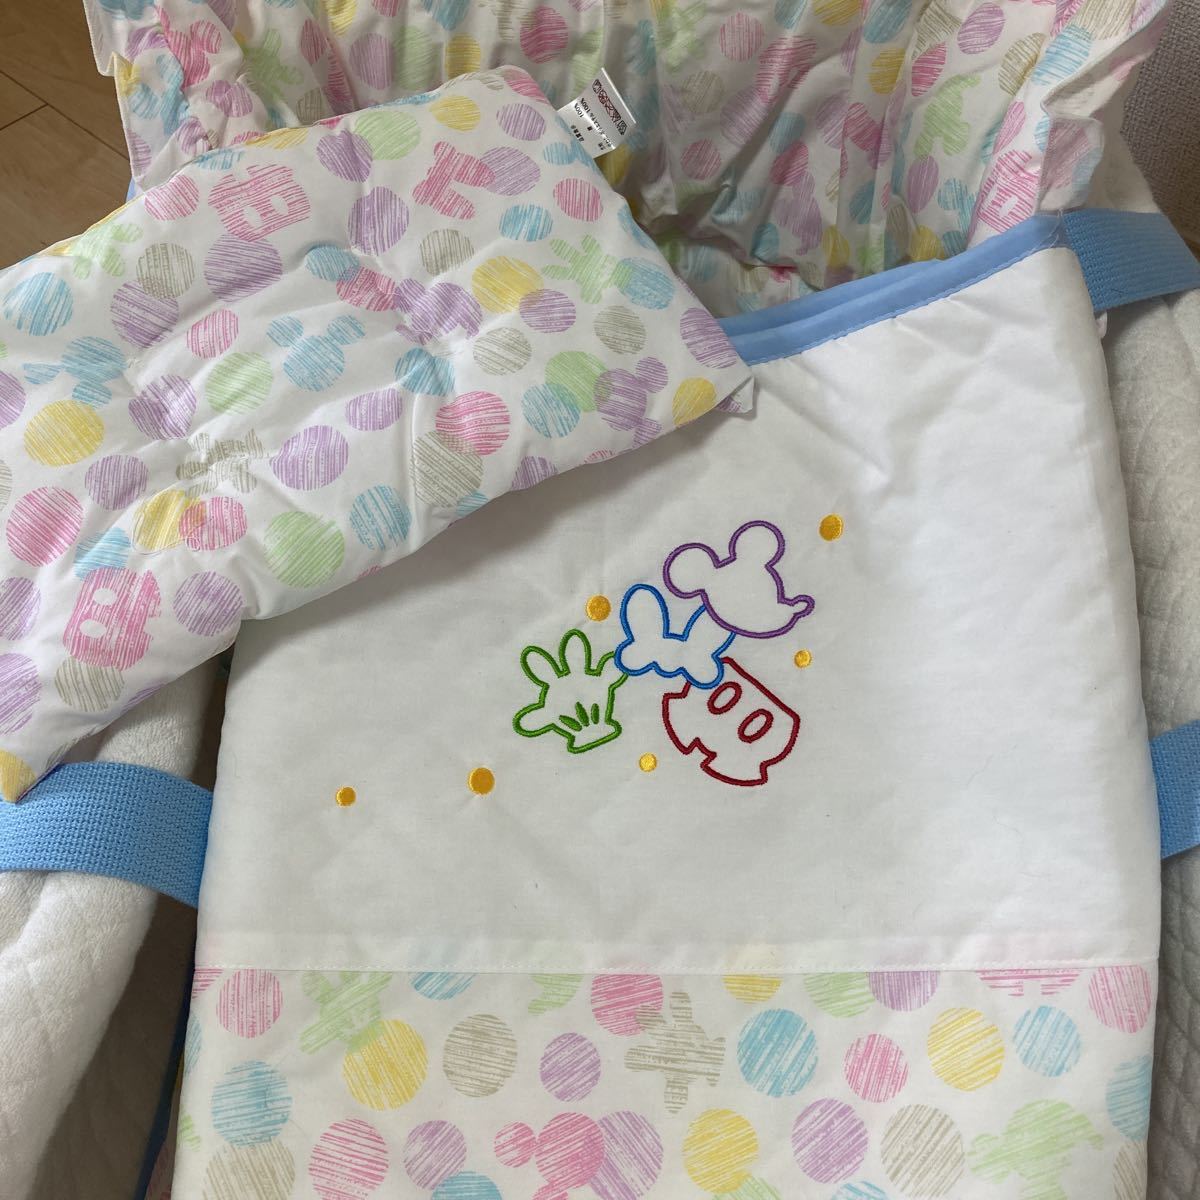  не использовался Disney мульти- Koo вентилятор 2 десять тысяч иен детская люлька . днем . коврик игровой коврик сумка матрац ватное одеяло красный коричневый n ho mpo детская кроватка 